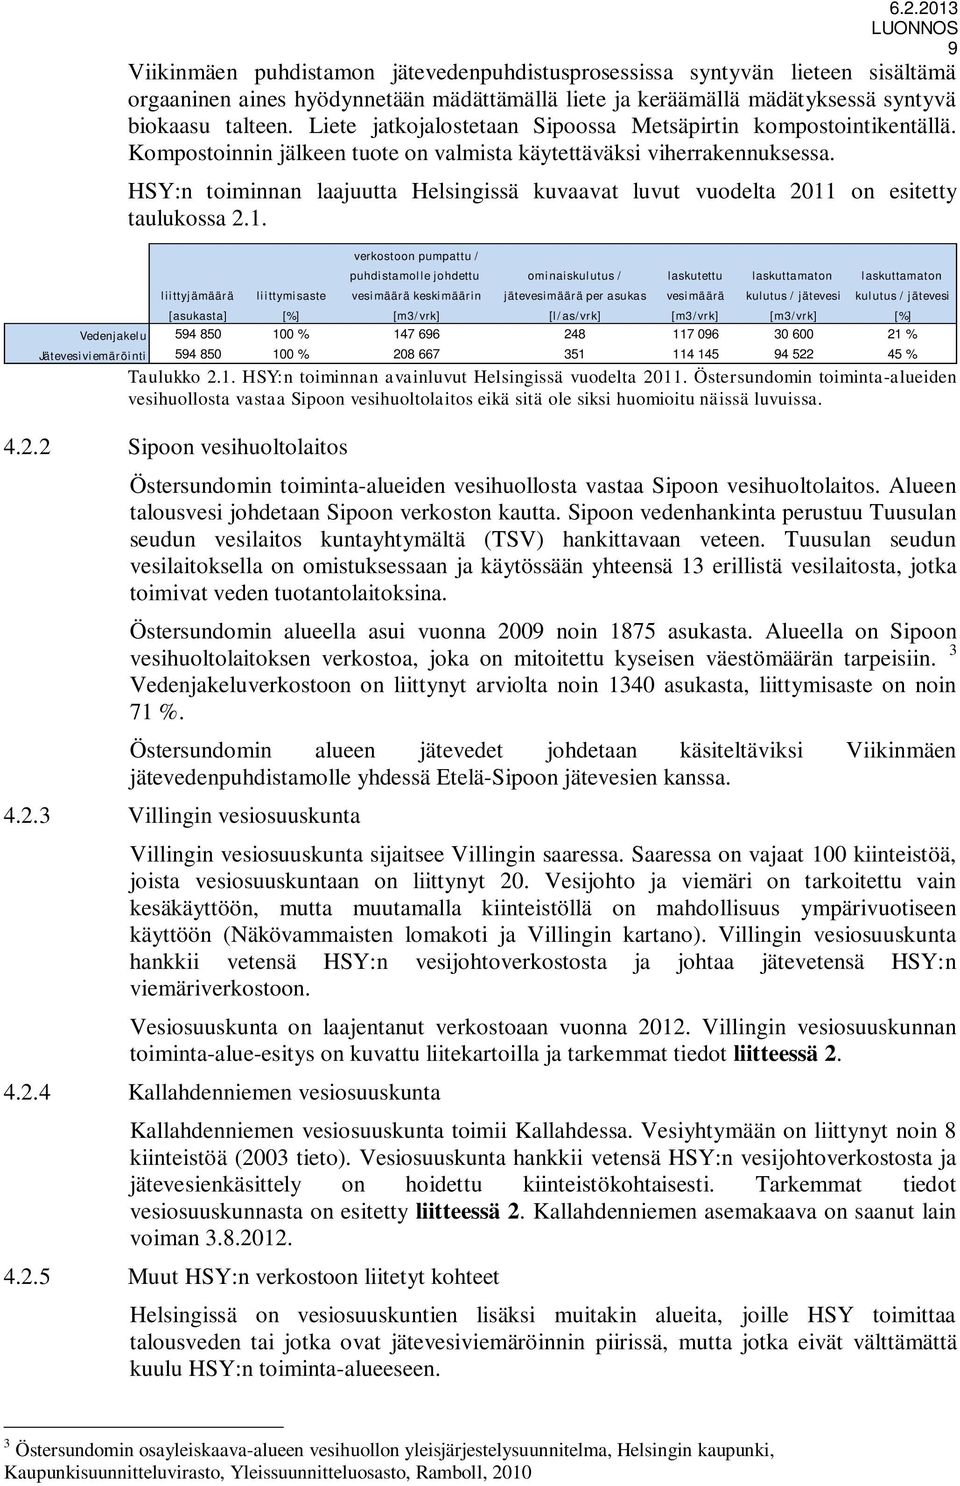 HSY:n toiminnan laajuutta Helsingissä kuvaavat luvut vuodelta 2011 on esitetty taulukossa 2.1. Taulukko 2.1. HSY:n toiminnan avainluvut Helsingissä vuodelta 2011.